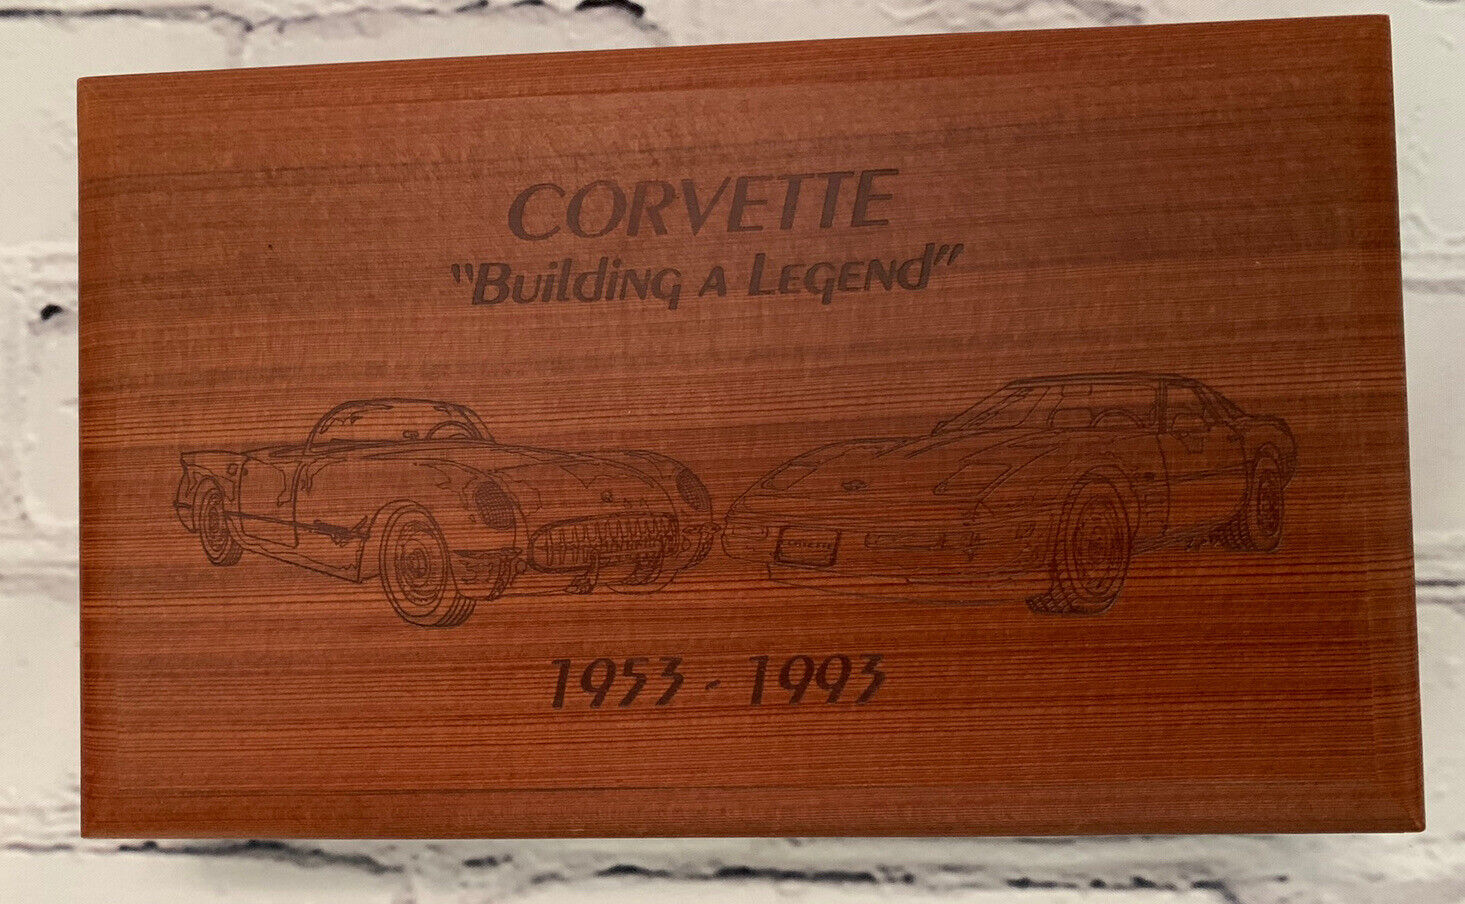 1953 1993 Corvette Autograph Zora Arkus Duntov Building a Legend   # 78 VHS Tape